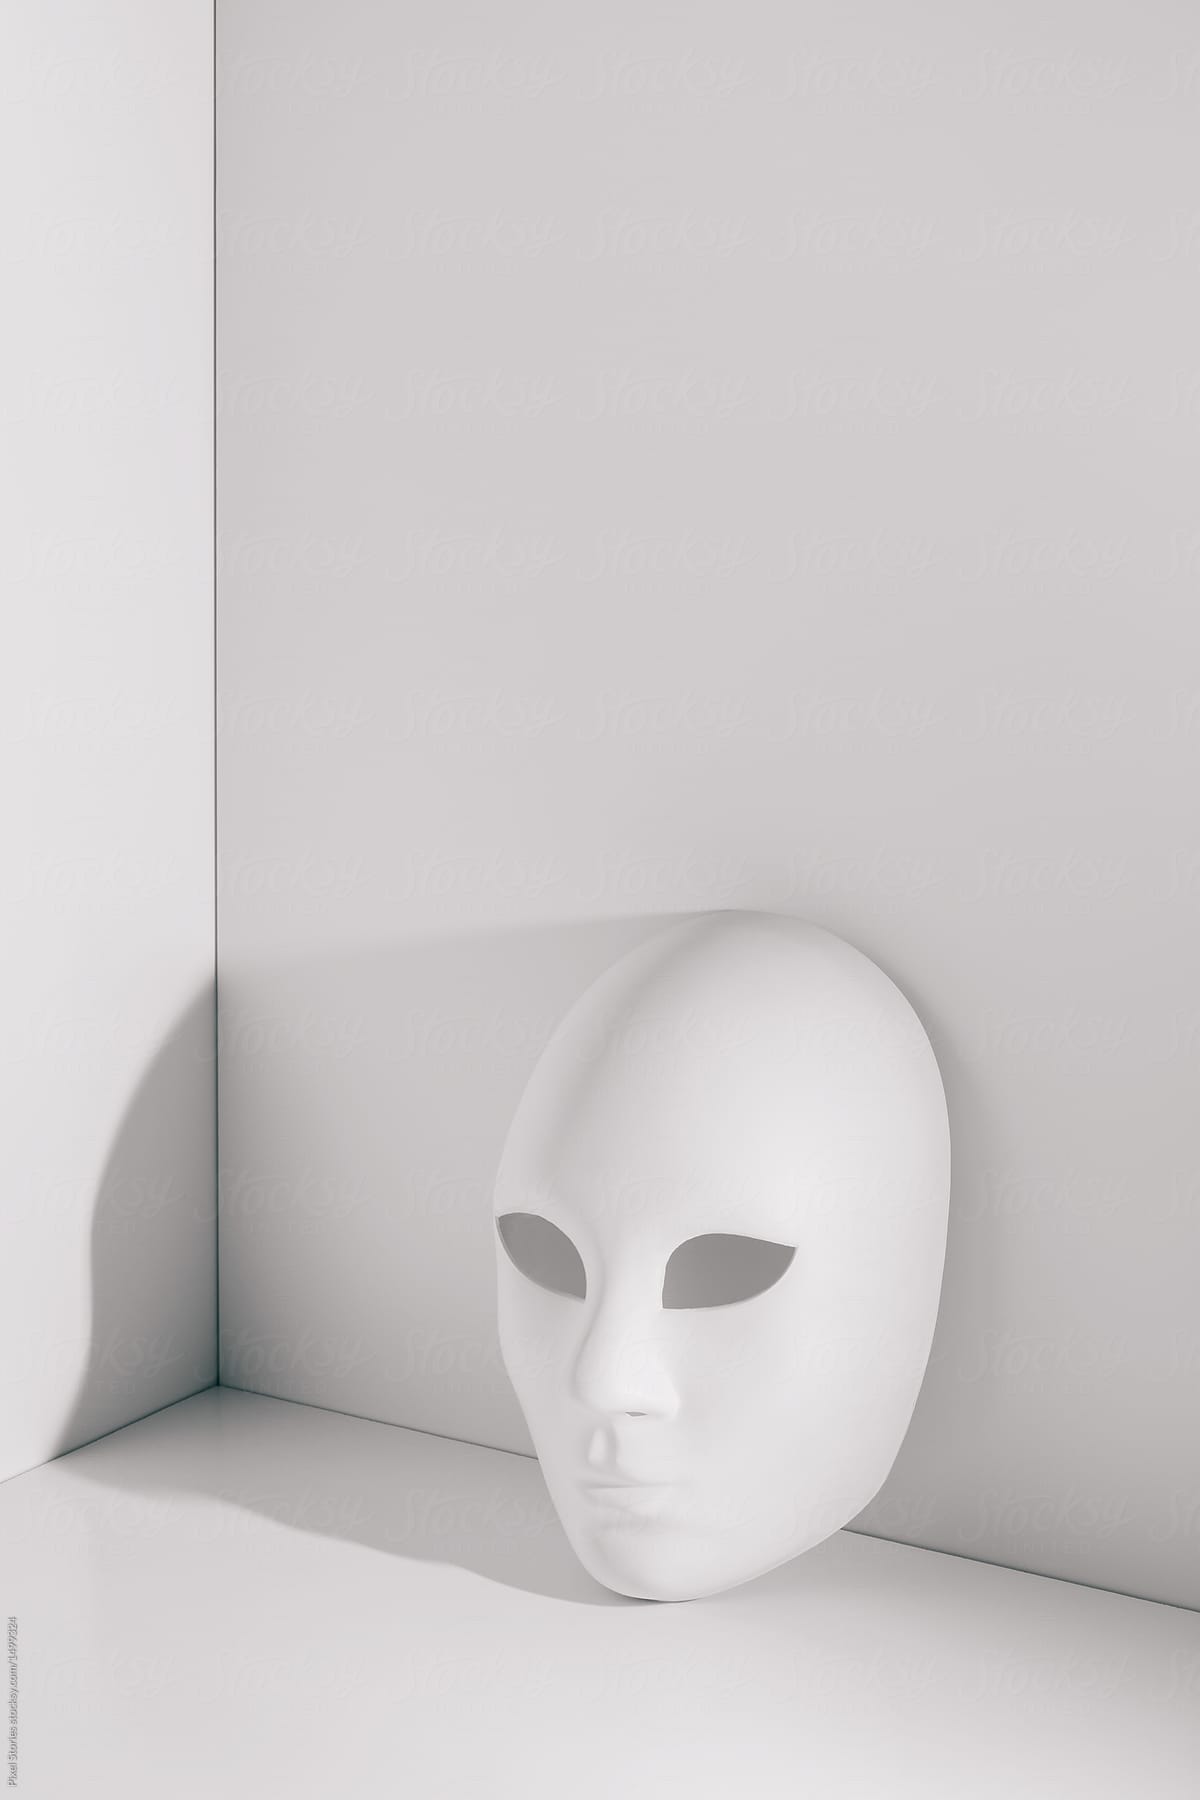 White spooky mask on white